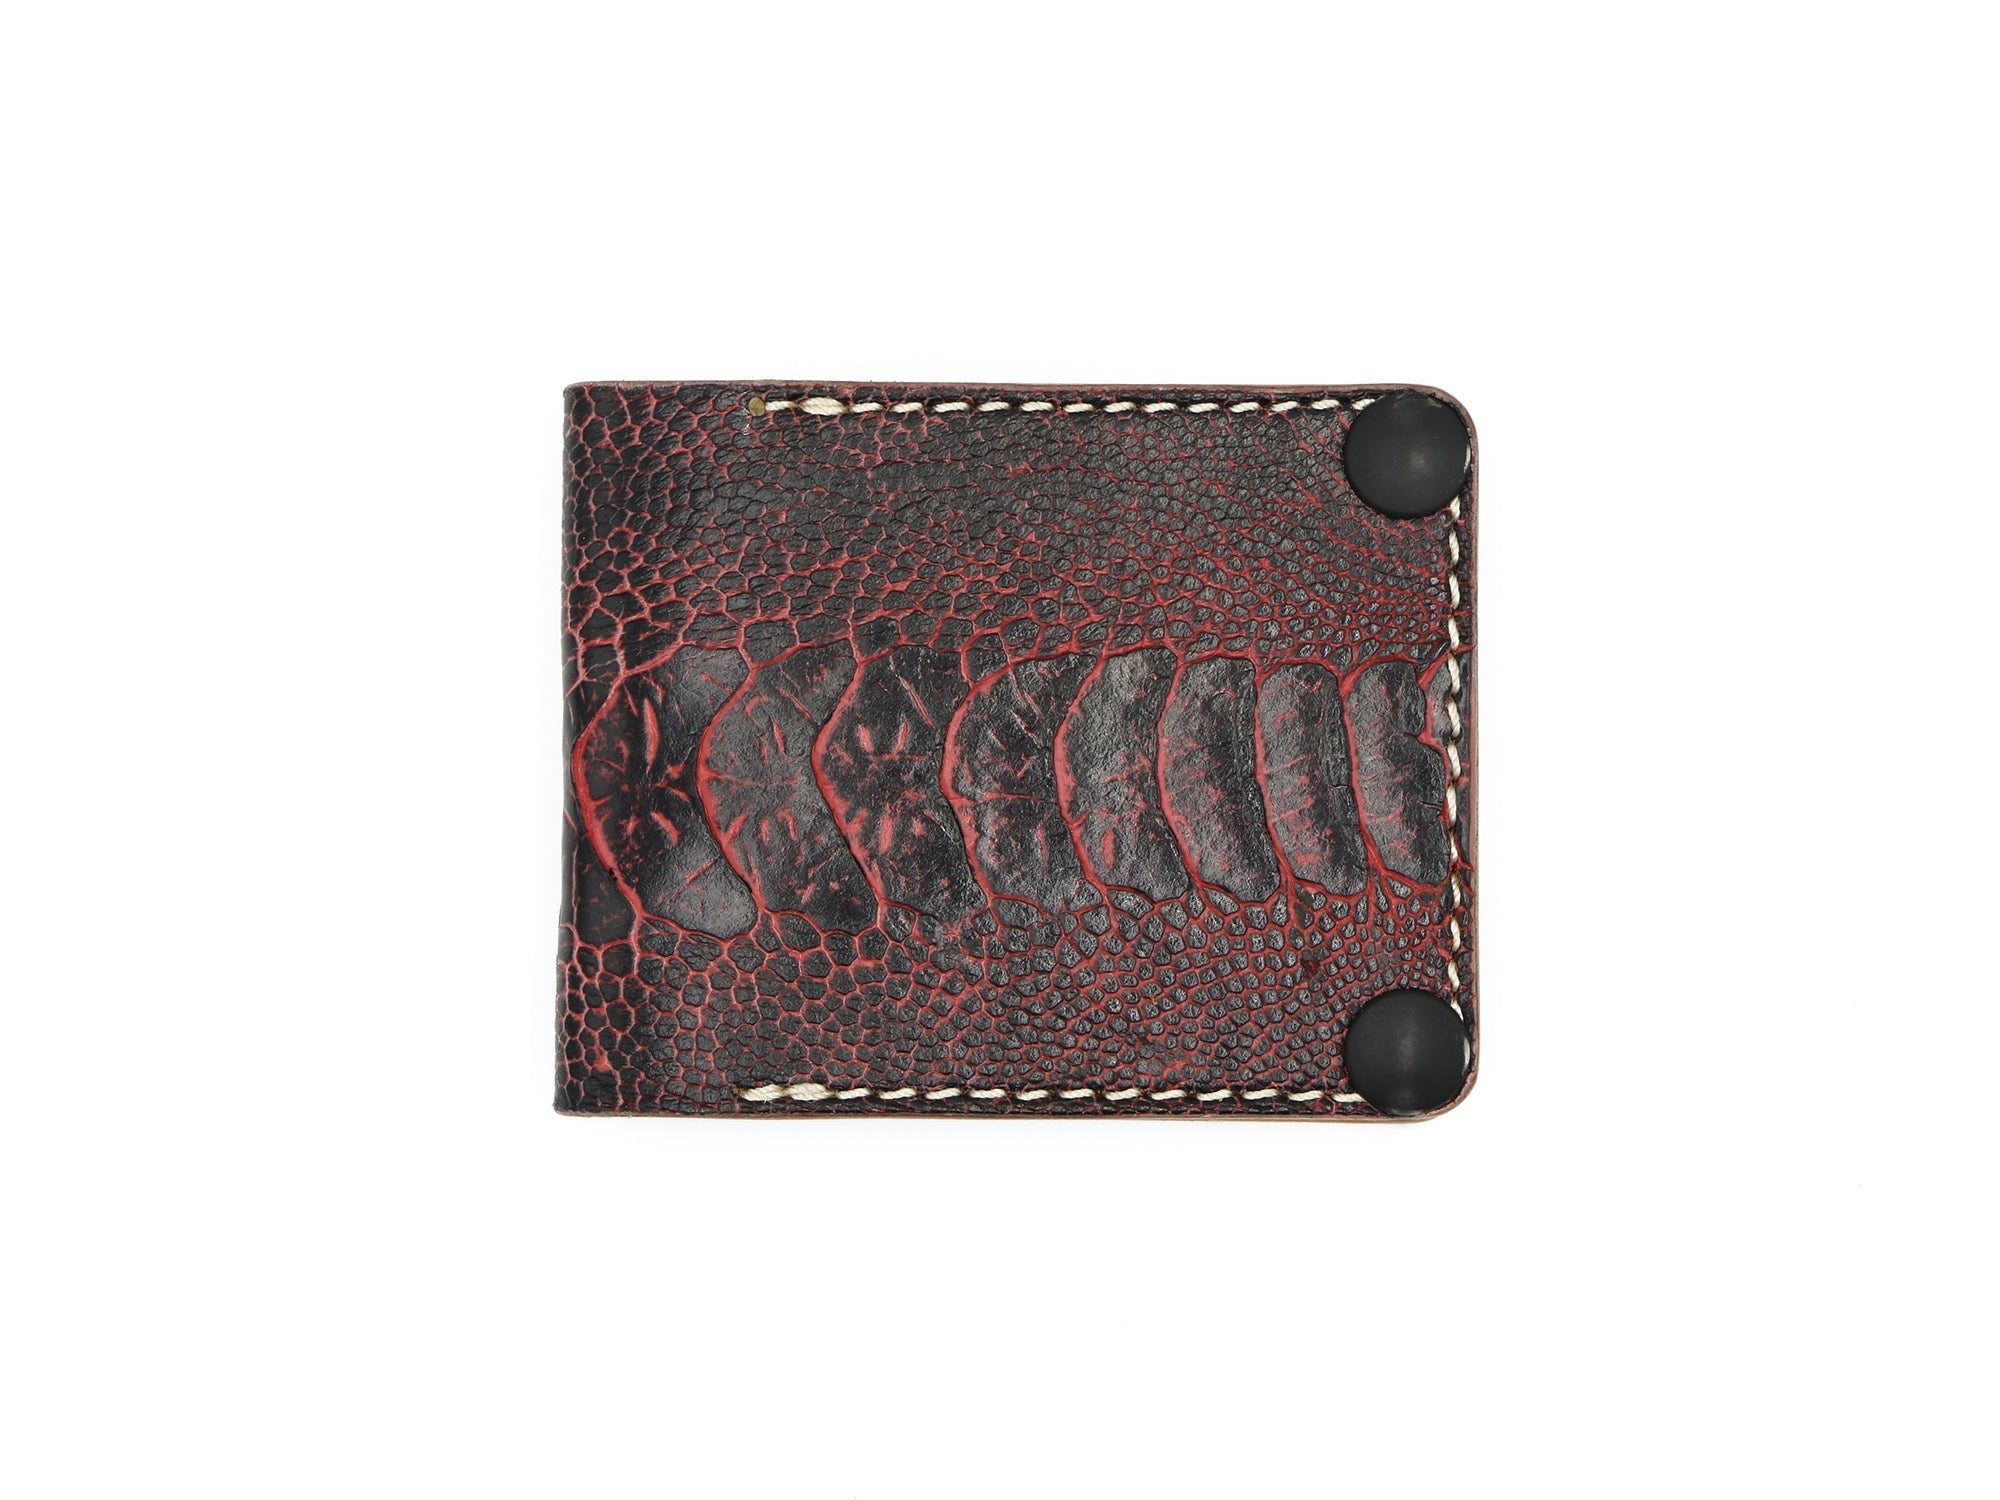 Louis Vuitton Dark Brown Leather BiFold Wallet